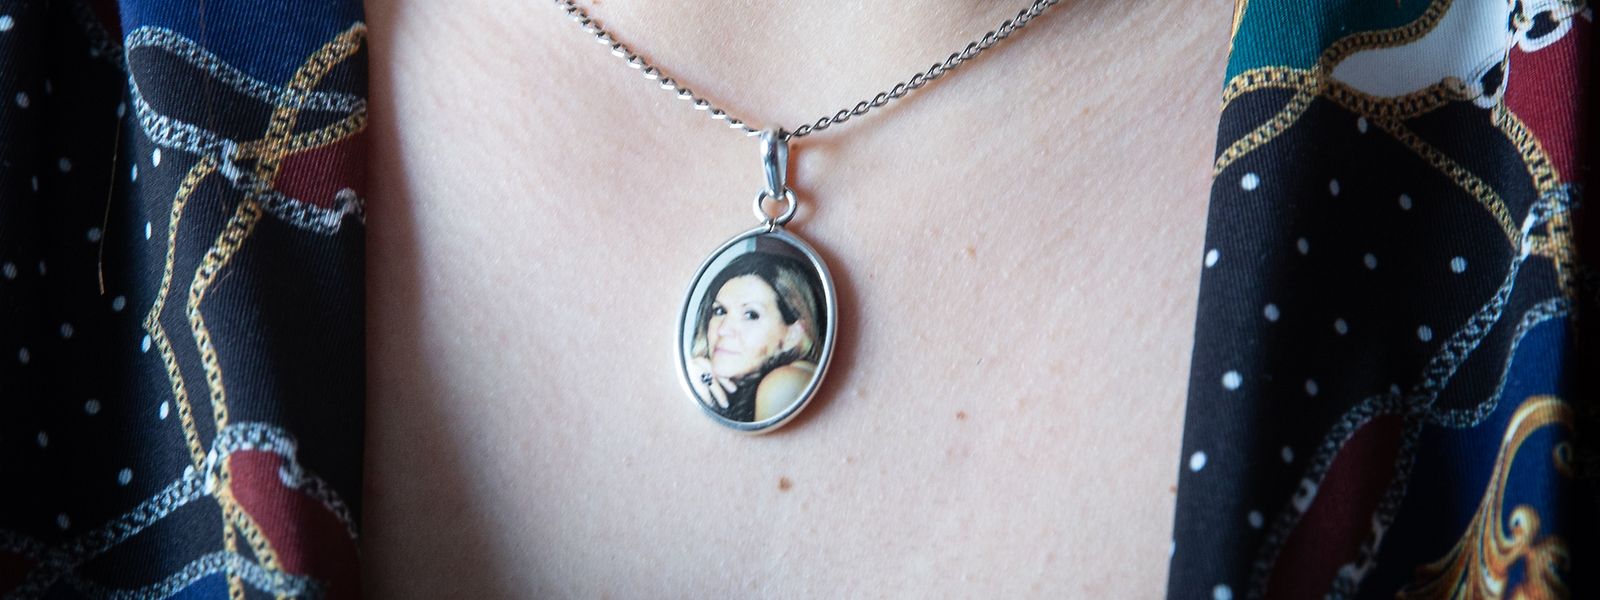 Immer bei ihr: das Abbild ihrer Mama. Vanessa Luz trägt seit dem Tod ihrer Mutter ein Medaillon mit deren Foto um den Hals.